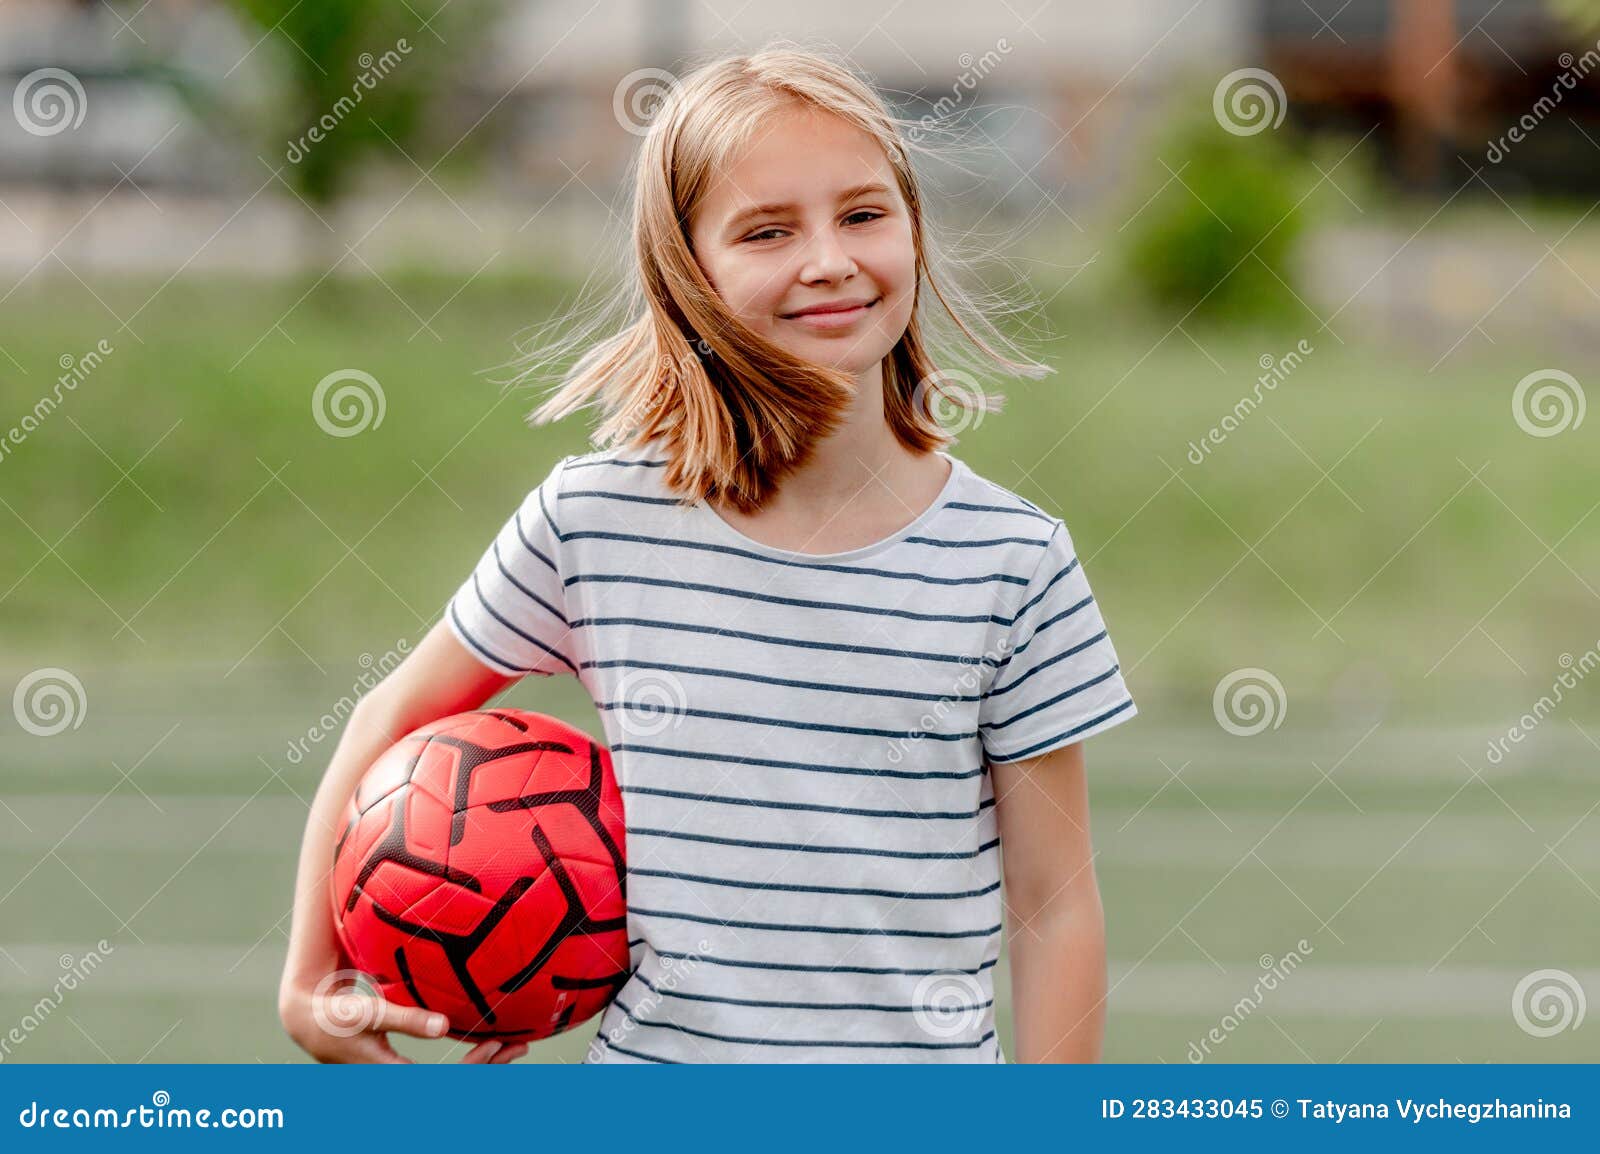 圆形足球和小女孩图片素材-编号32989090-图行天下